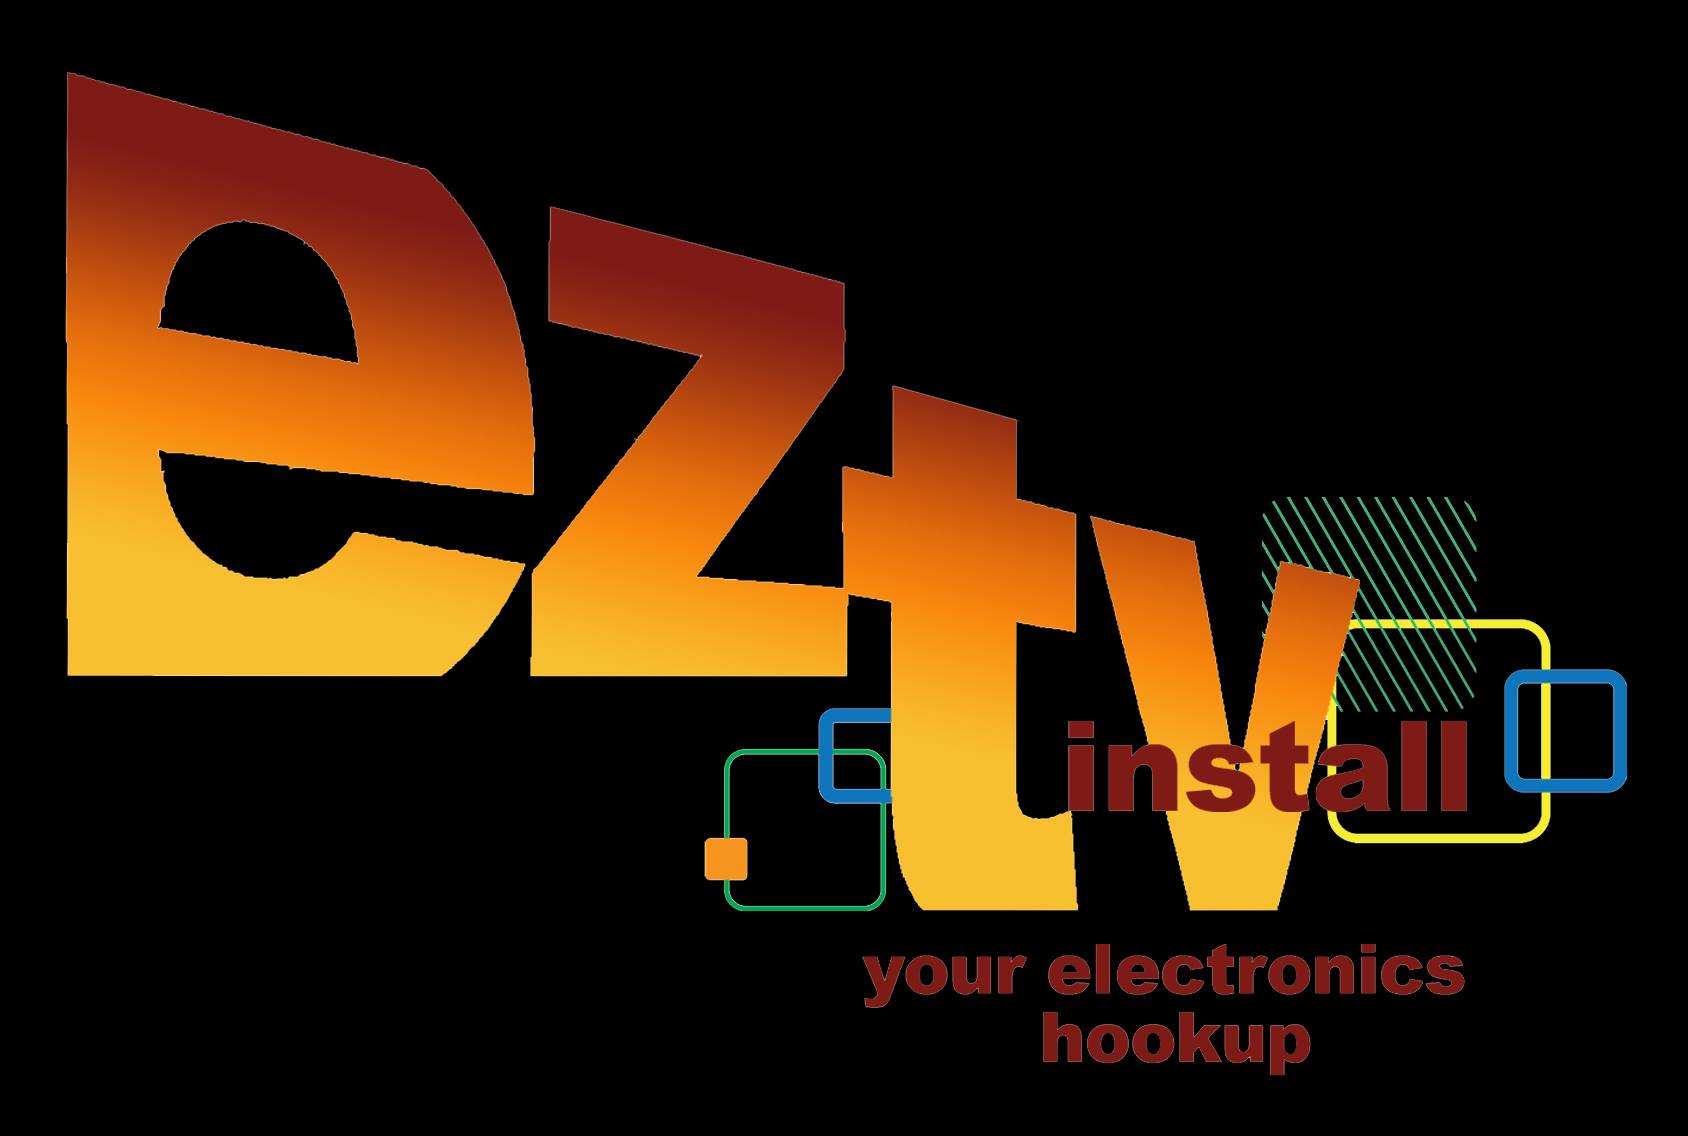 E Z TV Install